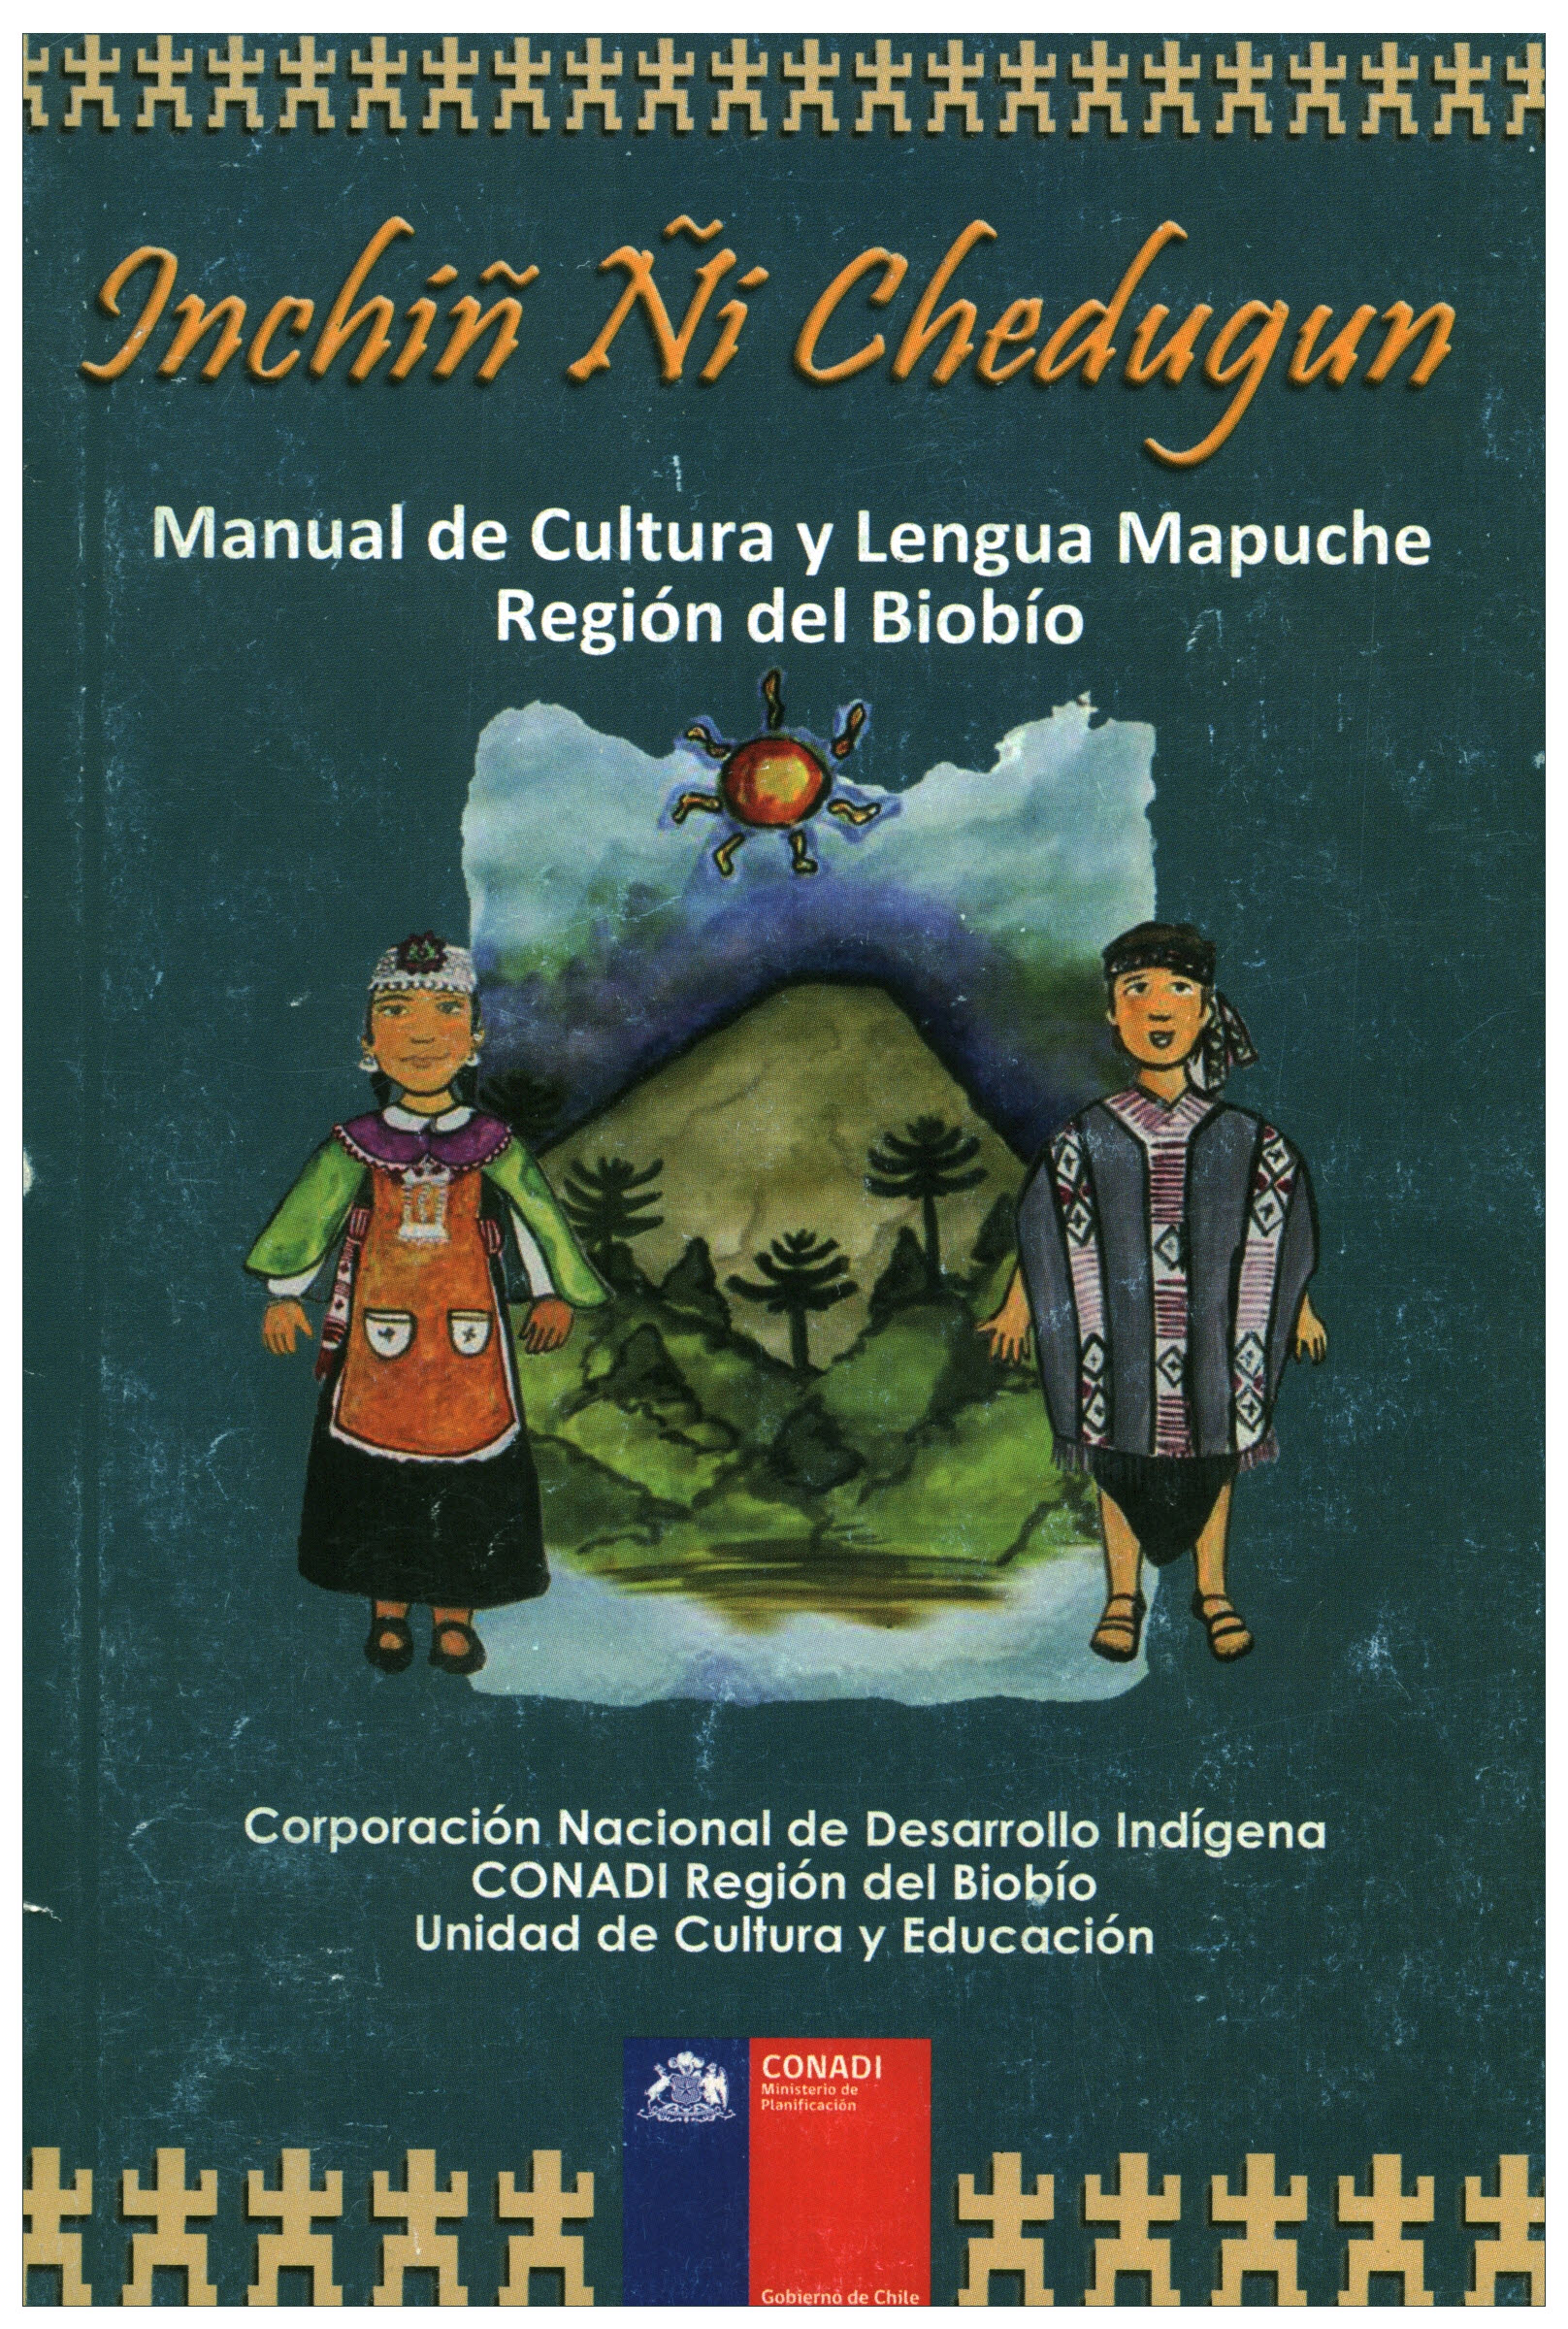 Manual de cultura y lengua mapuche Región del Bío Bío